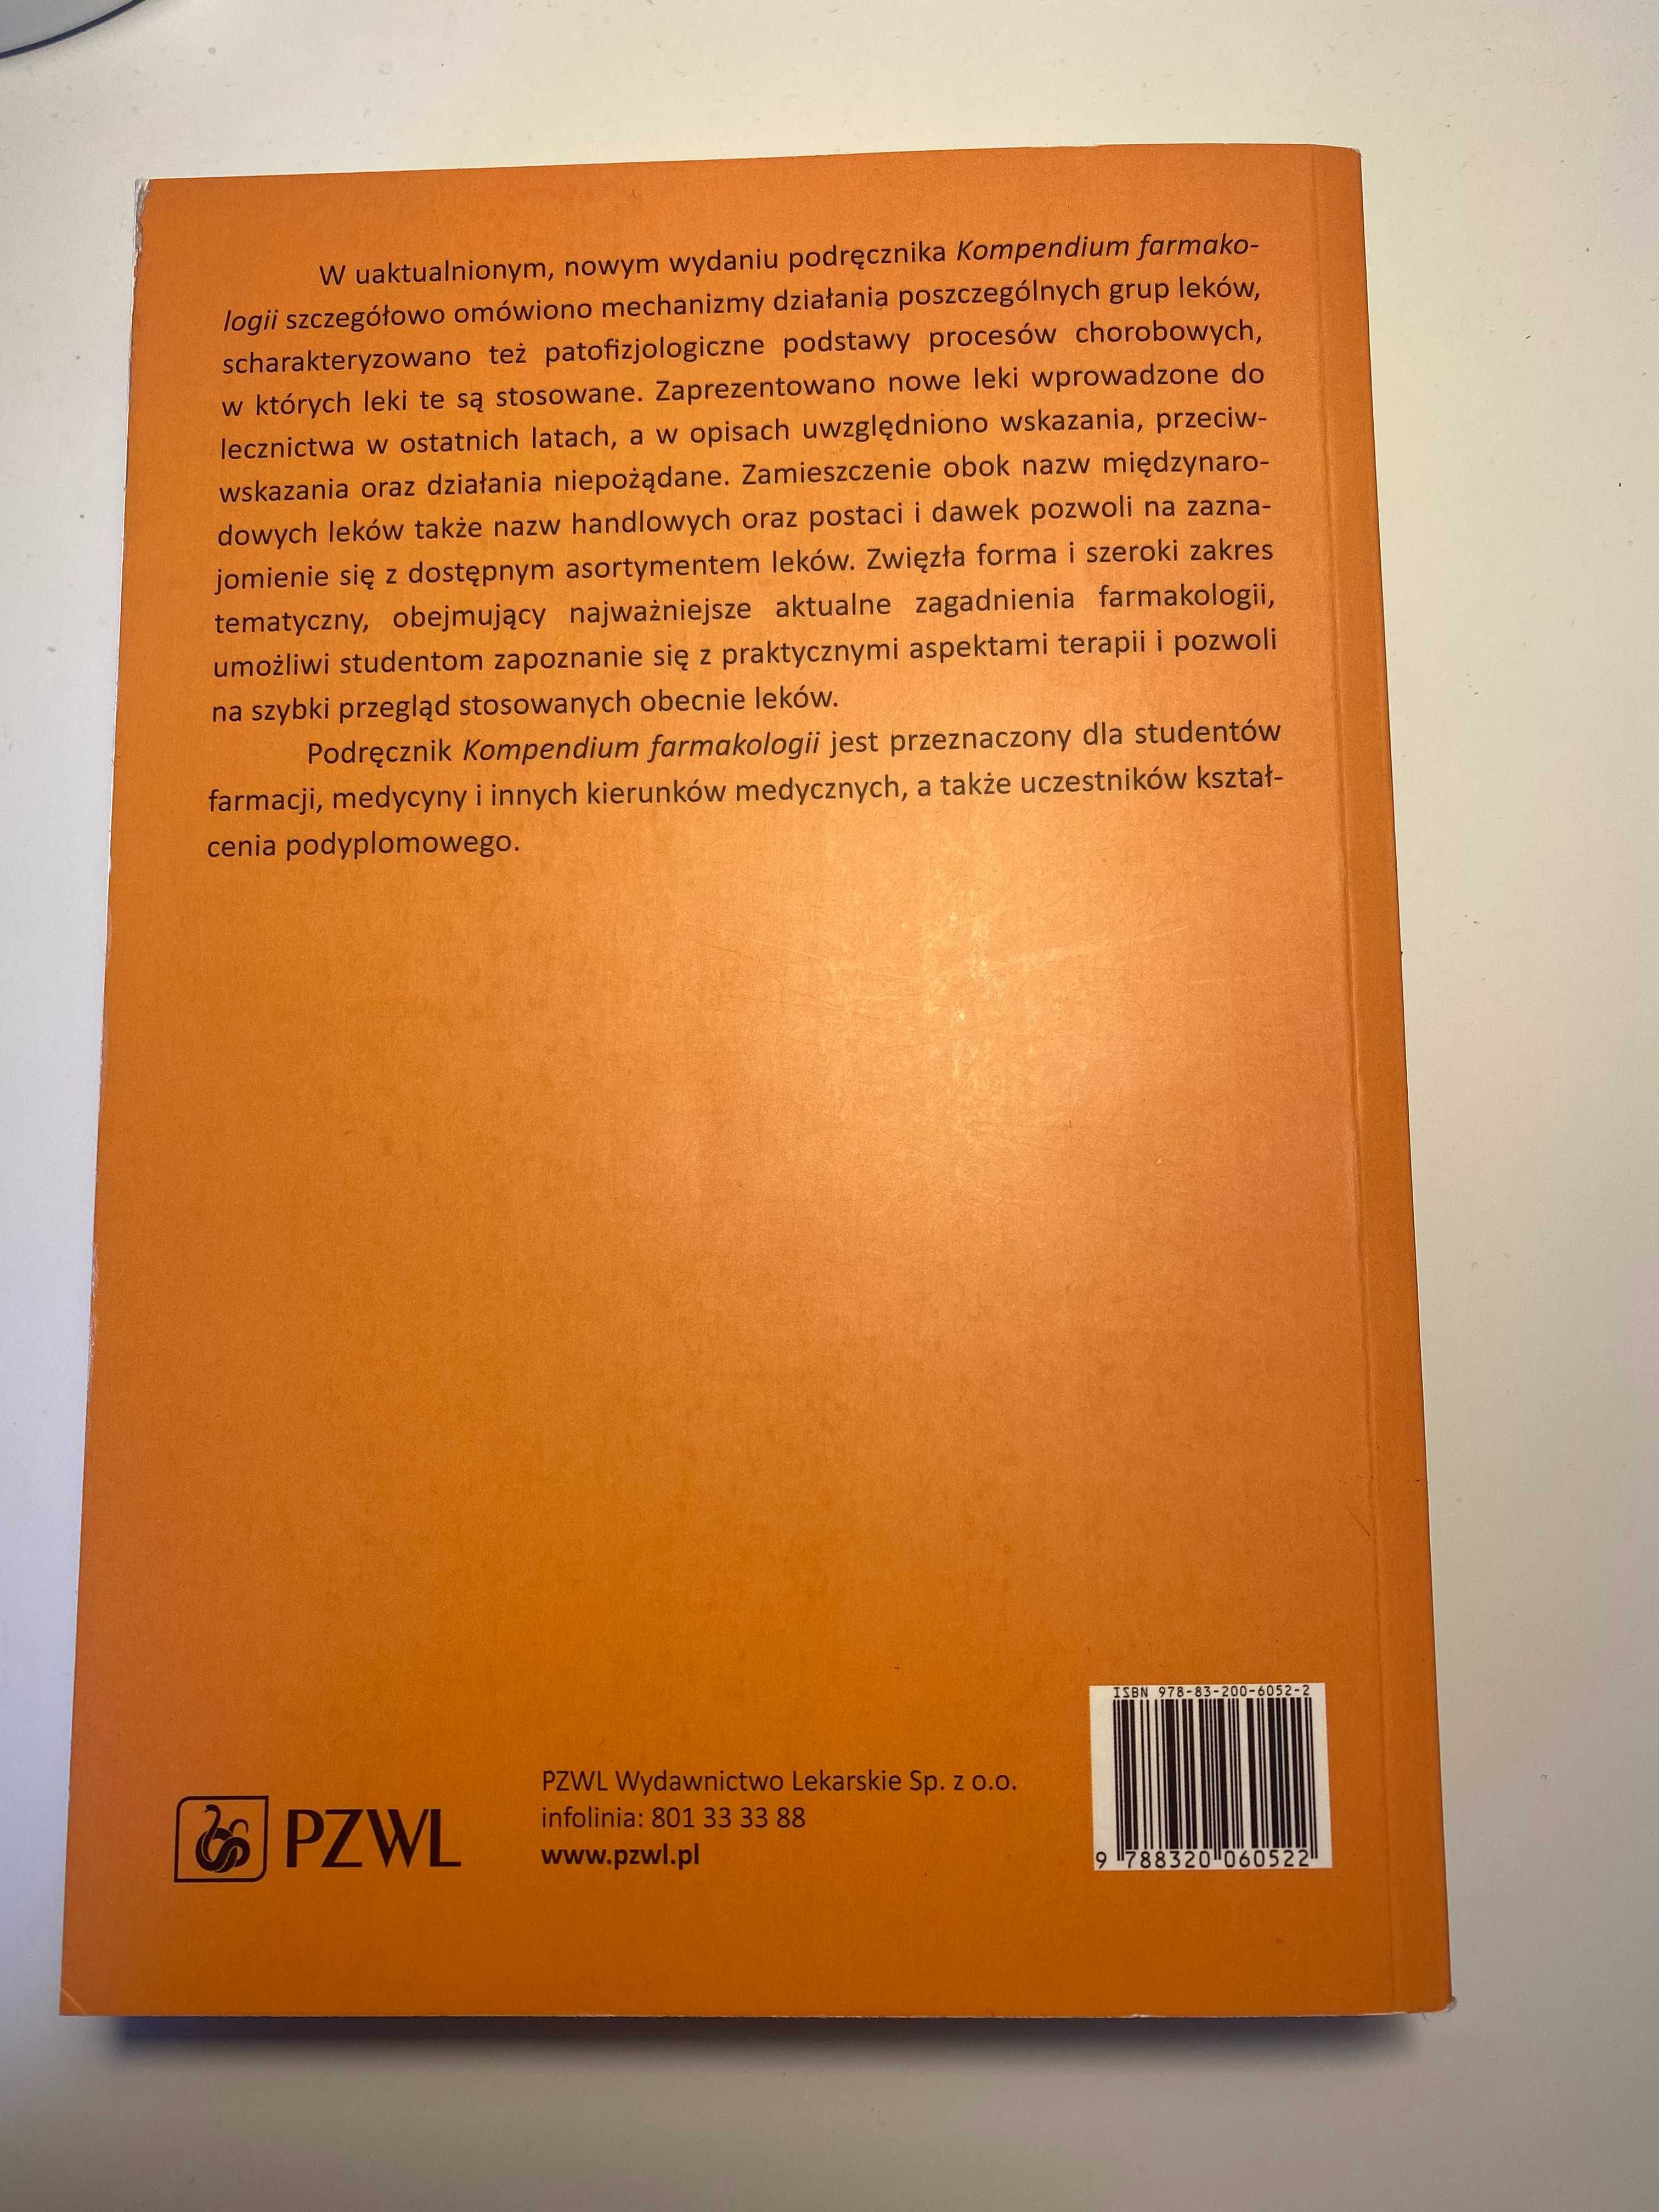 Kompendium Farmakologii Janiec Wydanie V uaktualnione i rozszerzone